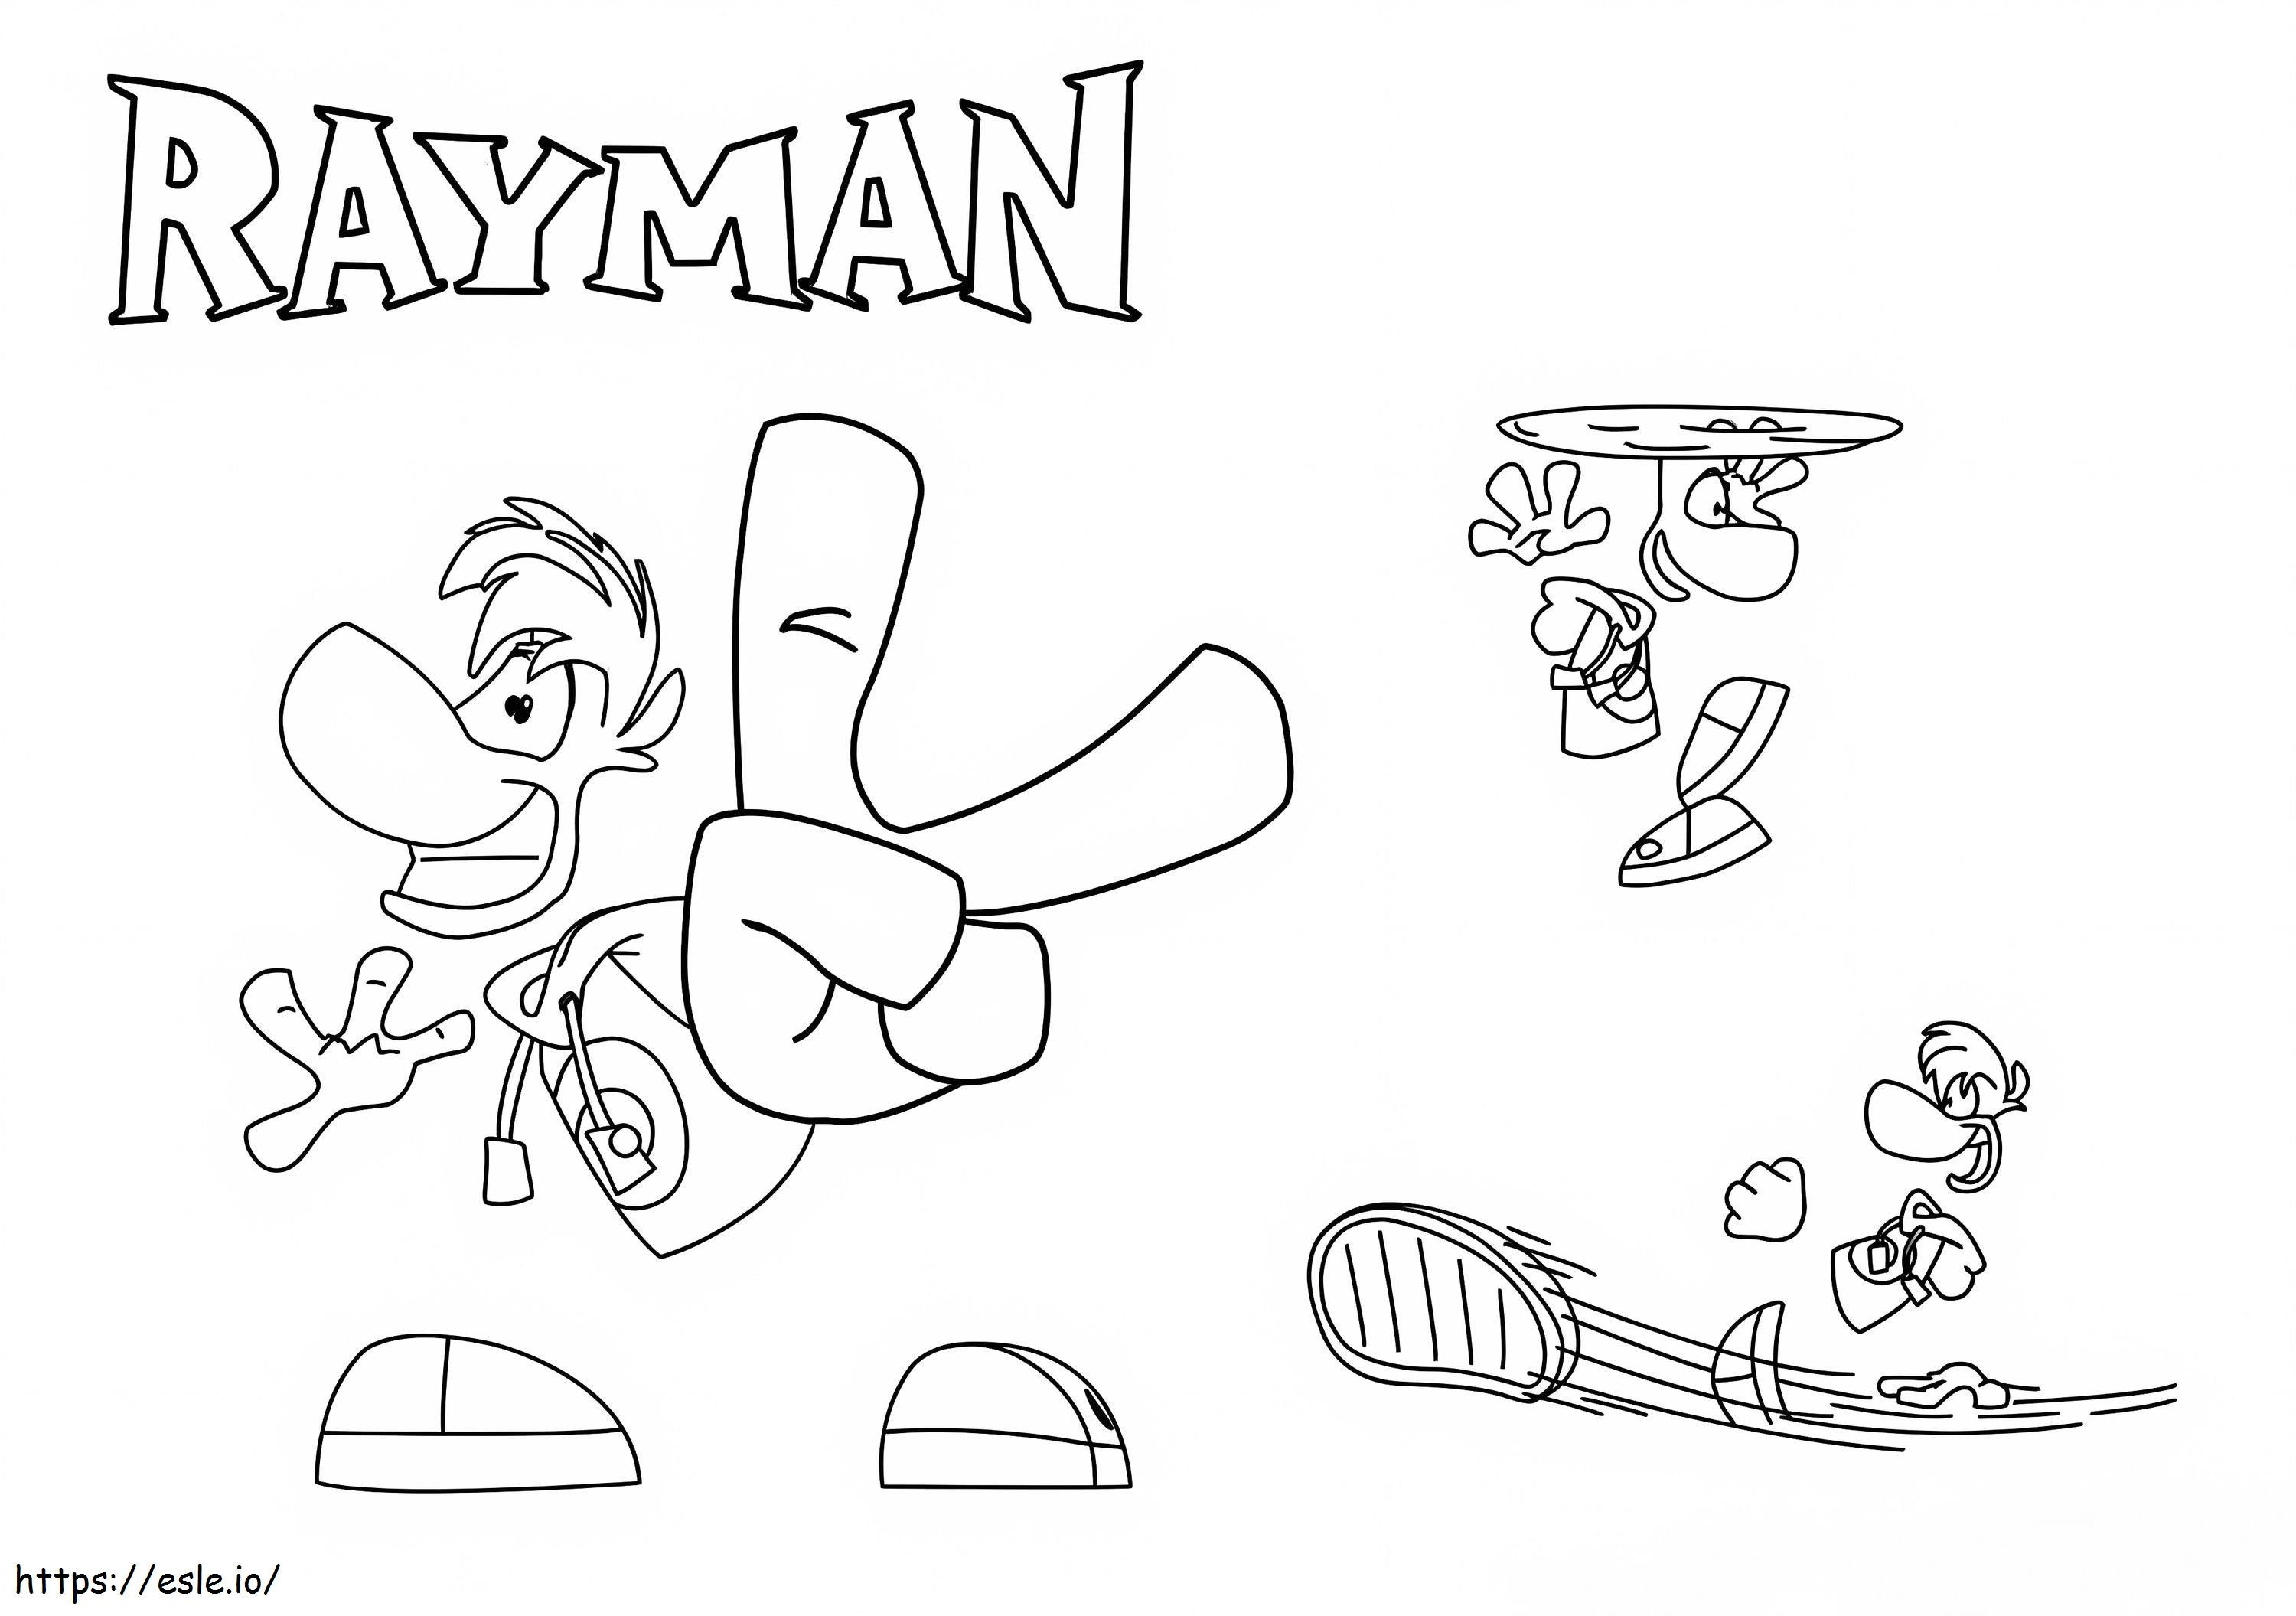 Raymann 1 da colorare